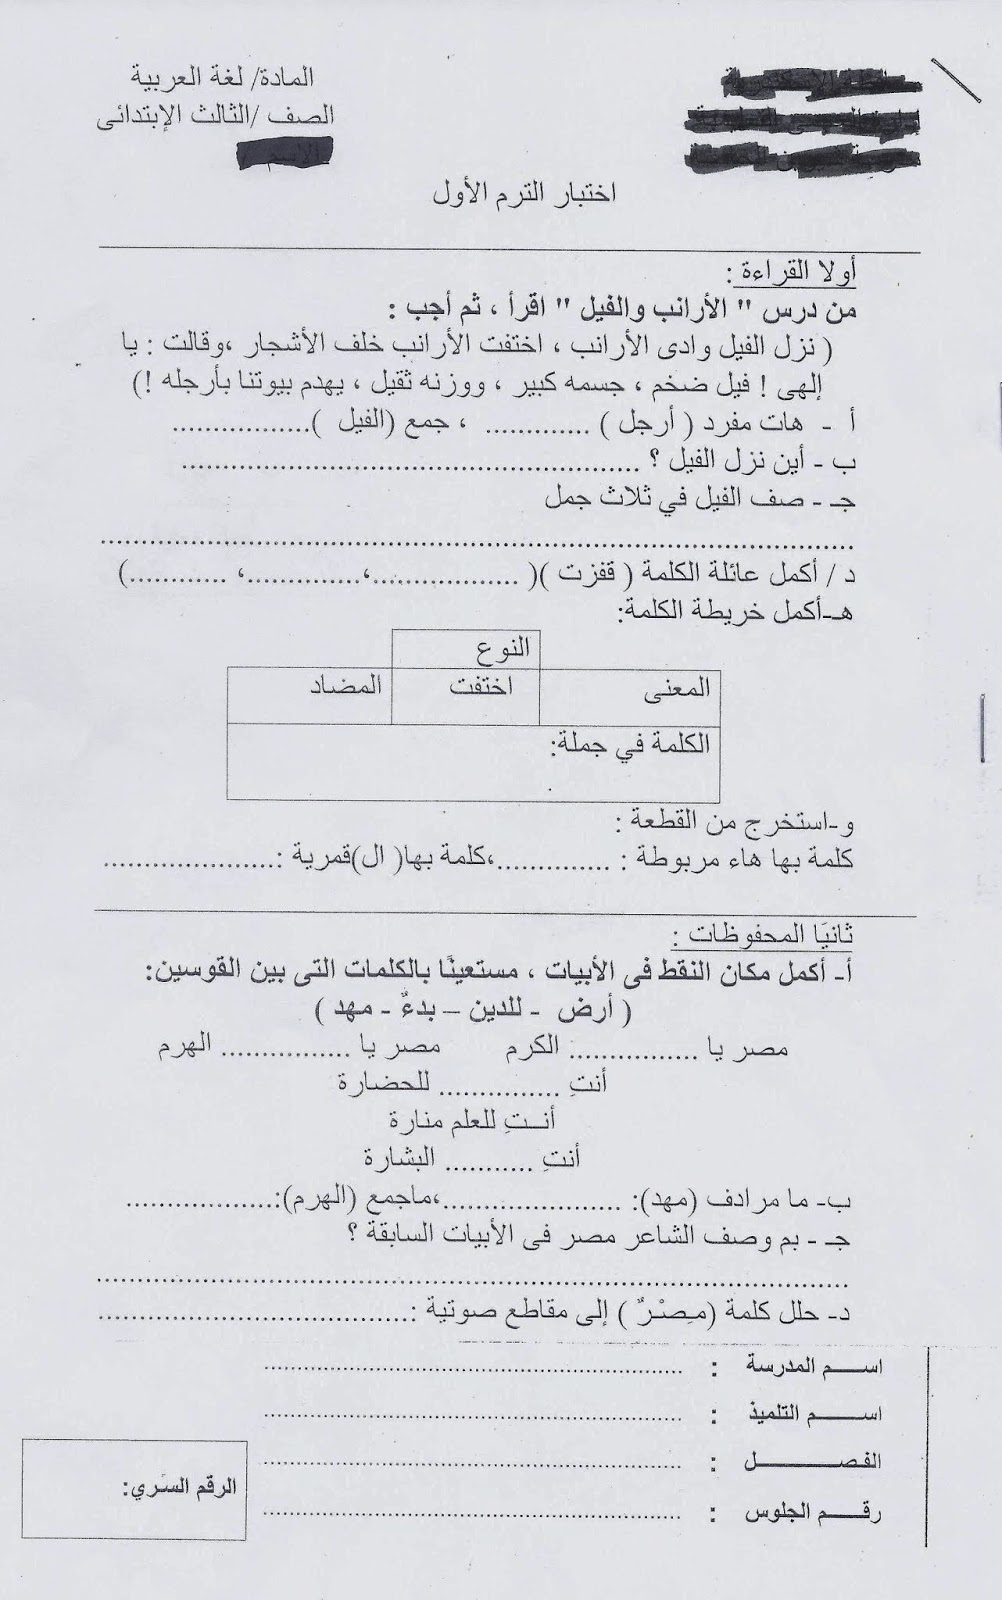 امتحانات الاسكندرية 2015 - امتحان اللغة العربية والتربية الاسلامية للصف الثالث الابتدائى نصف العام 2015 Scan0077